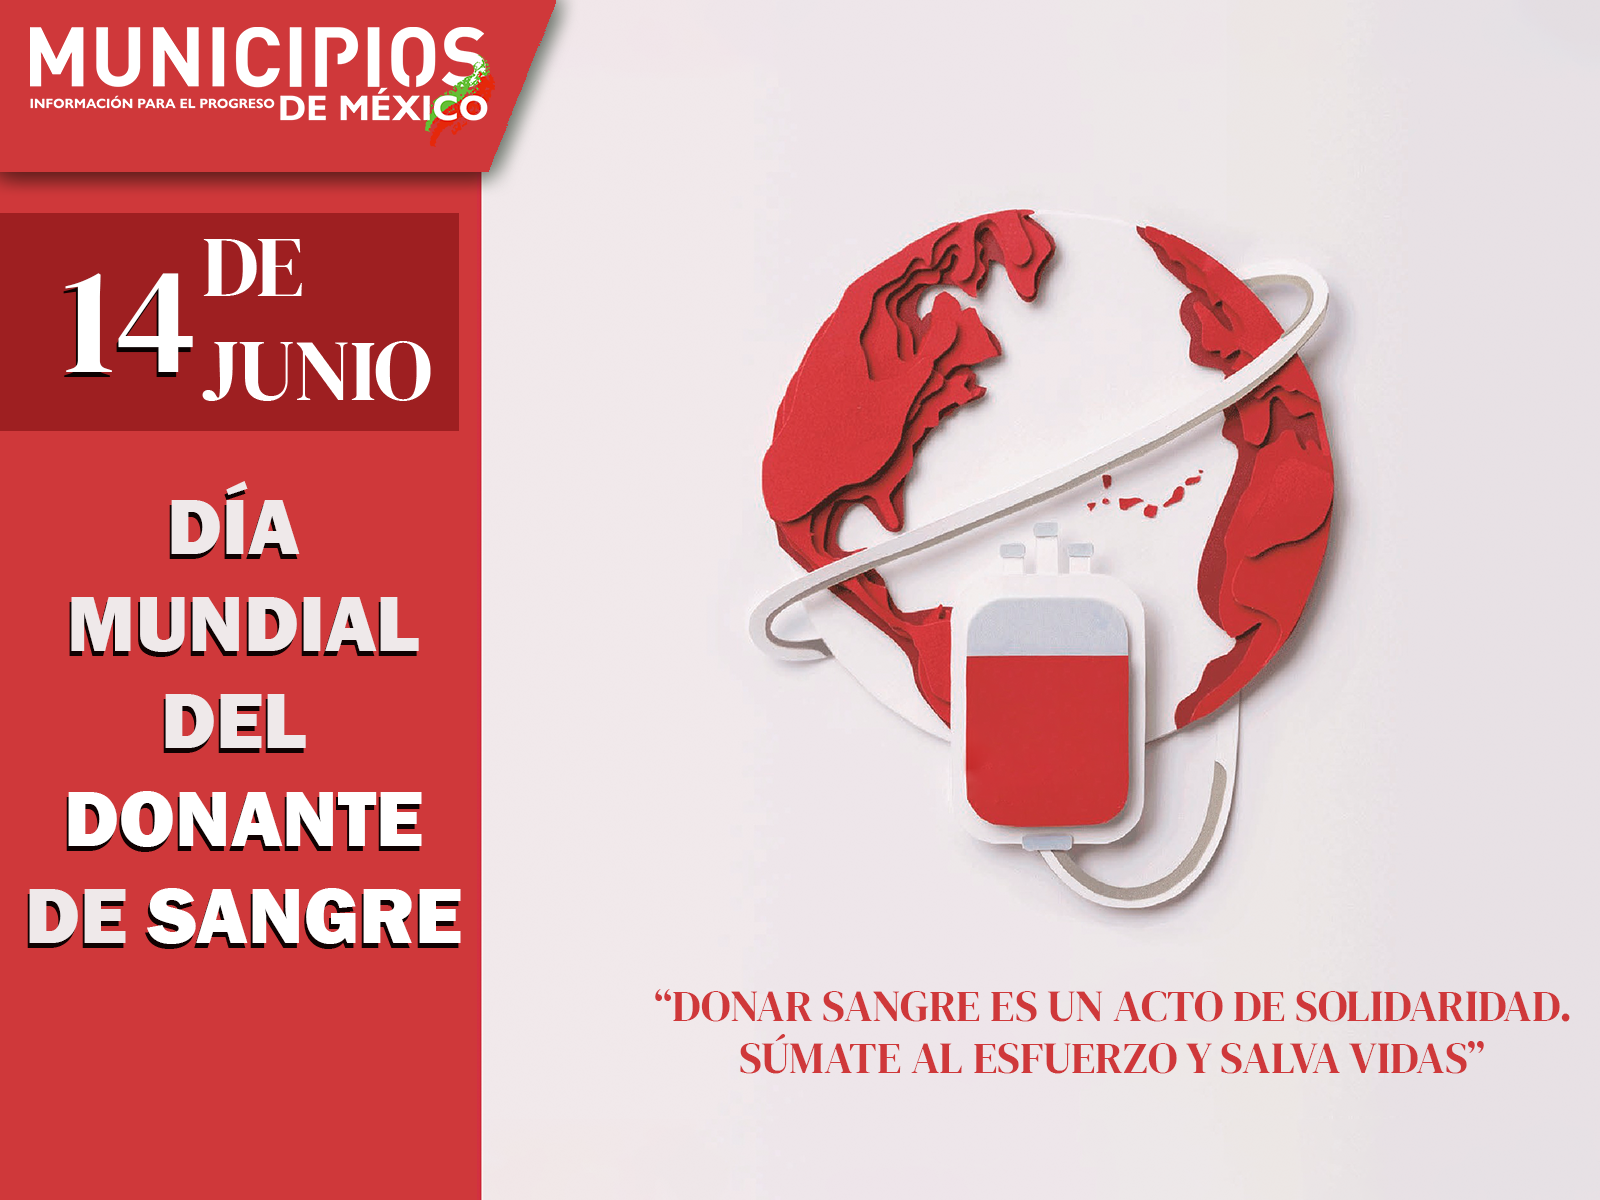 Día mundial del donante de sangre - Municipios de México